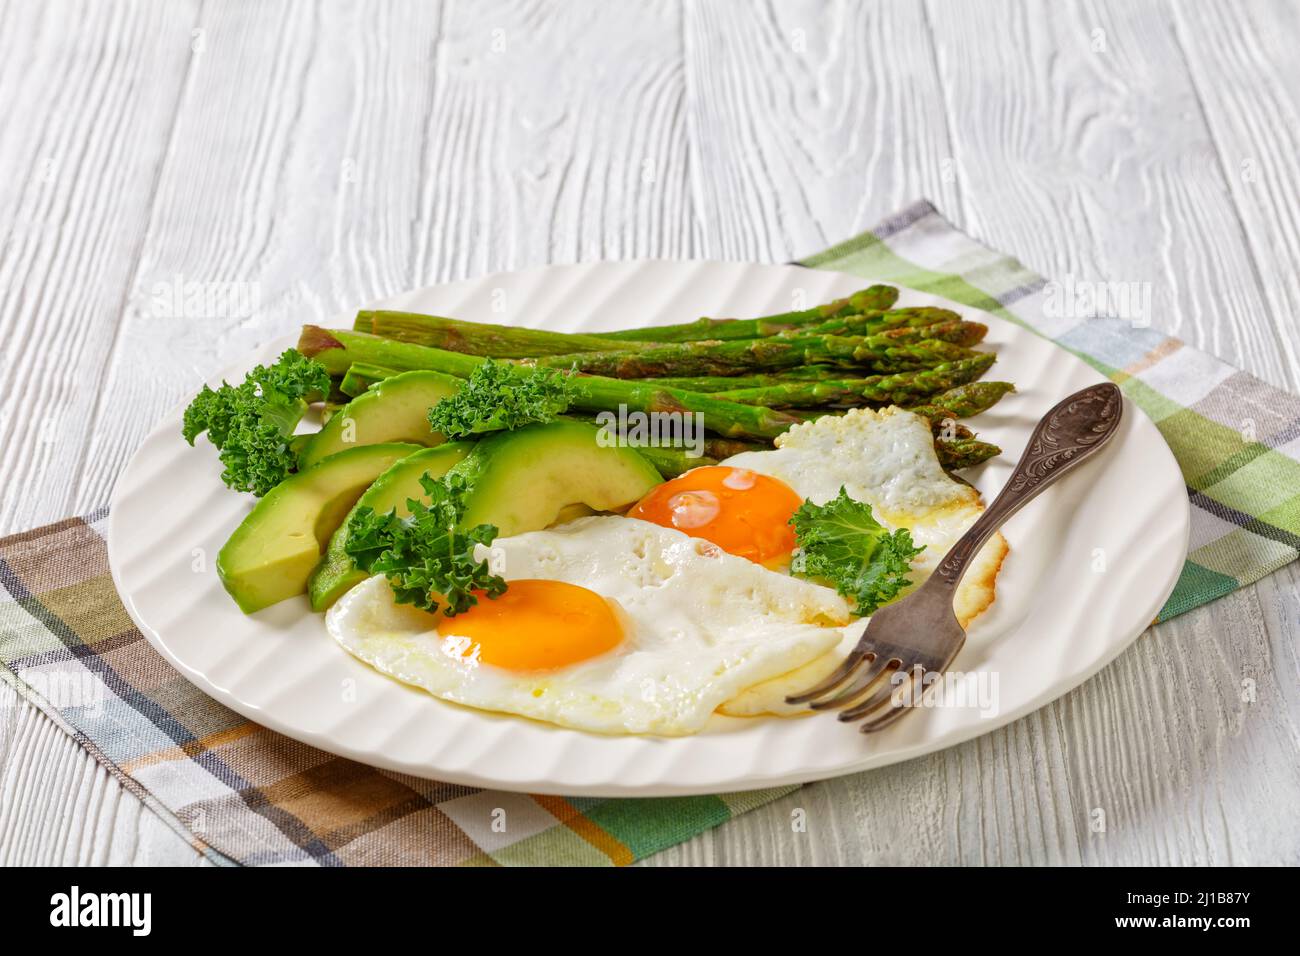 asparagi cotti, avocado fresco maturo e uova fritte con tuorli runny su un piatto bianco, vista orizzontale, primo piano, spazio libero Foto Stock